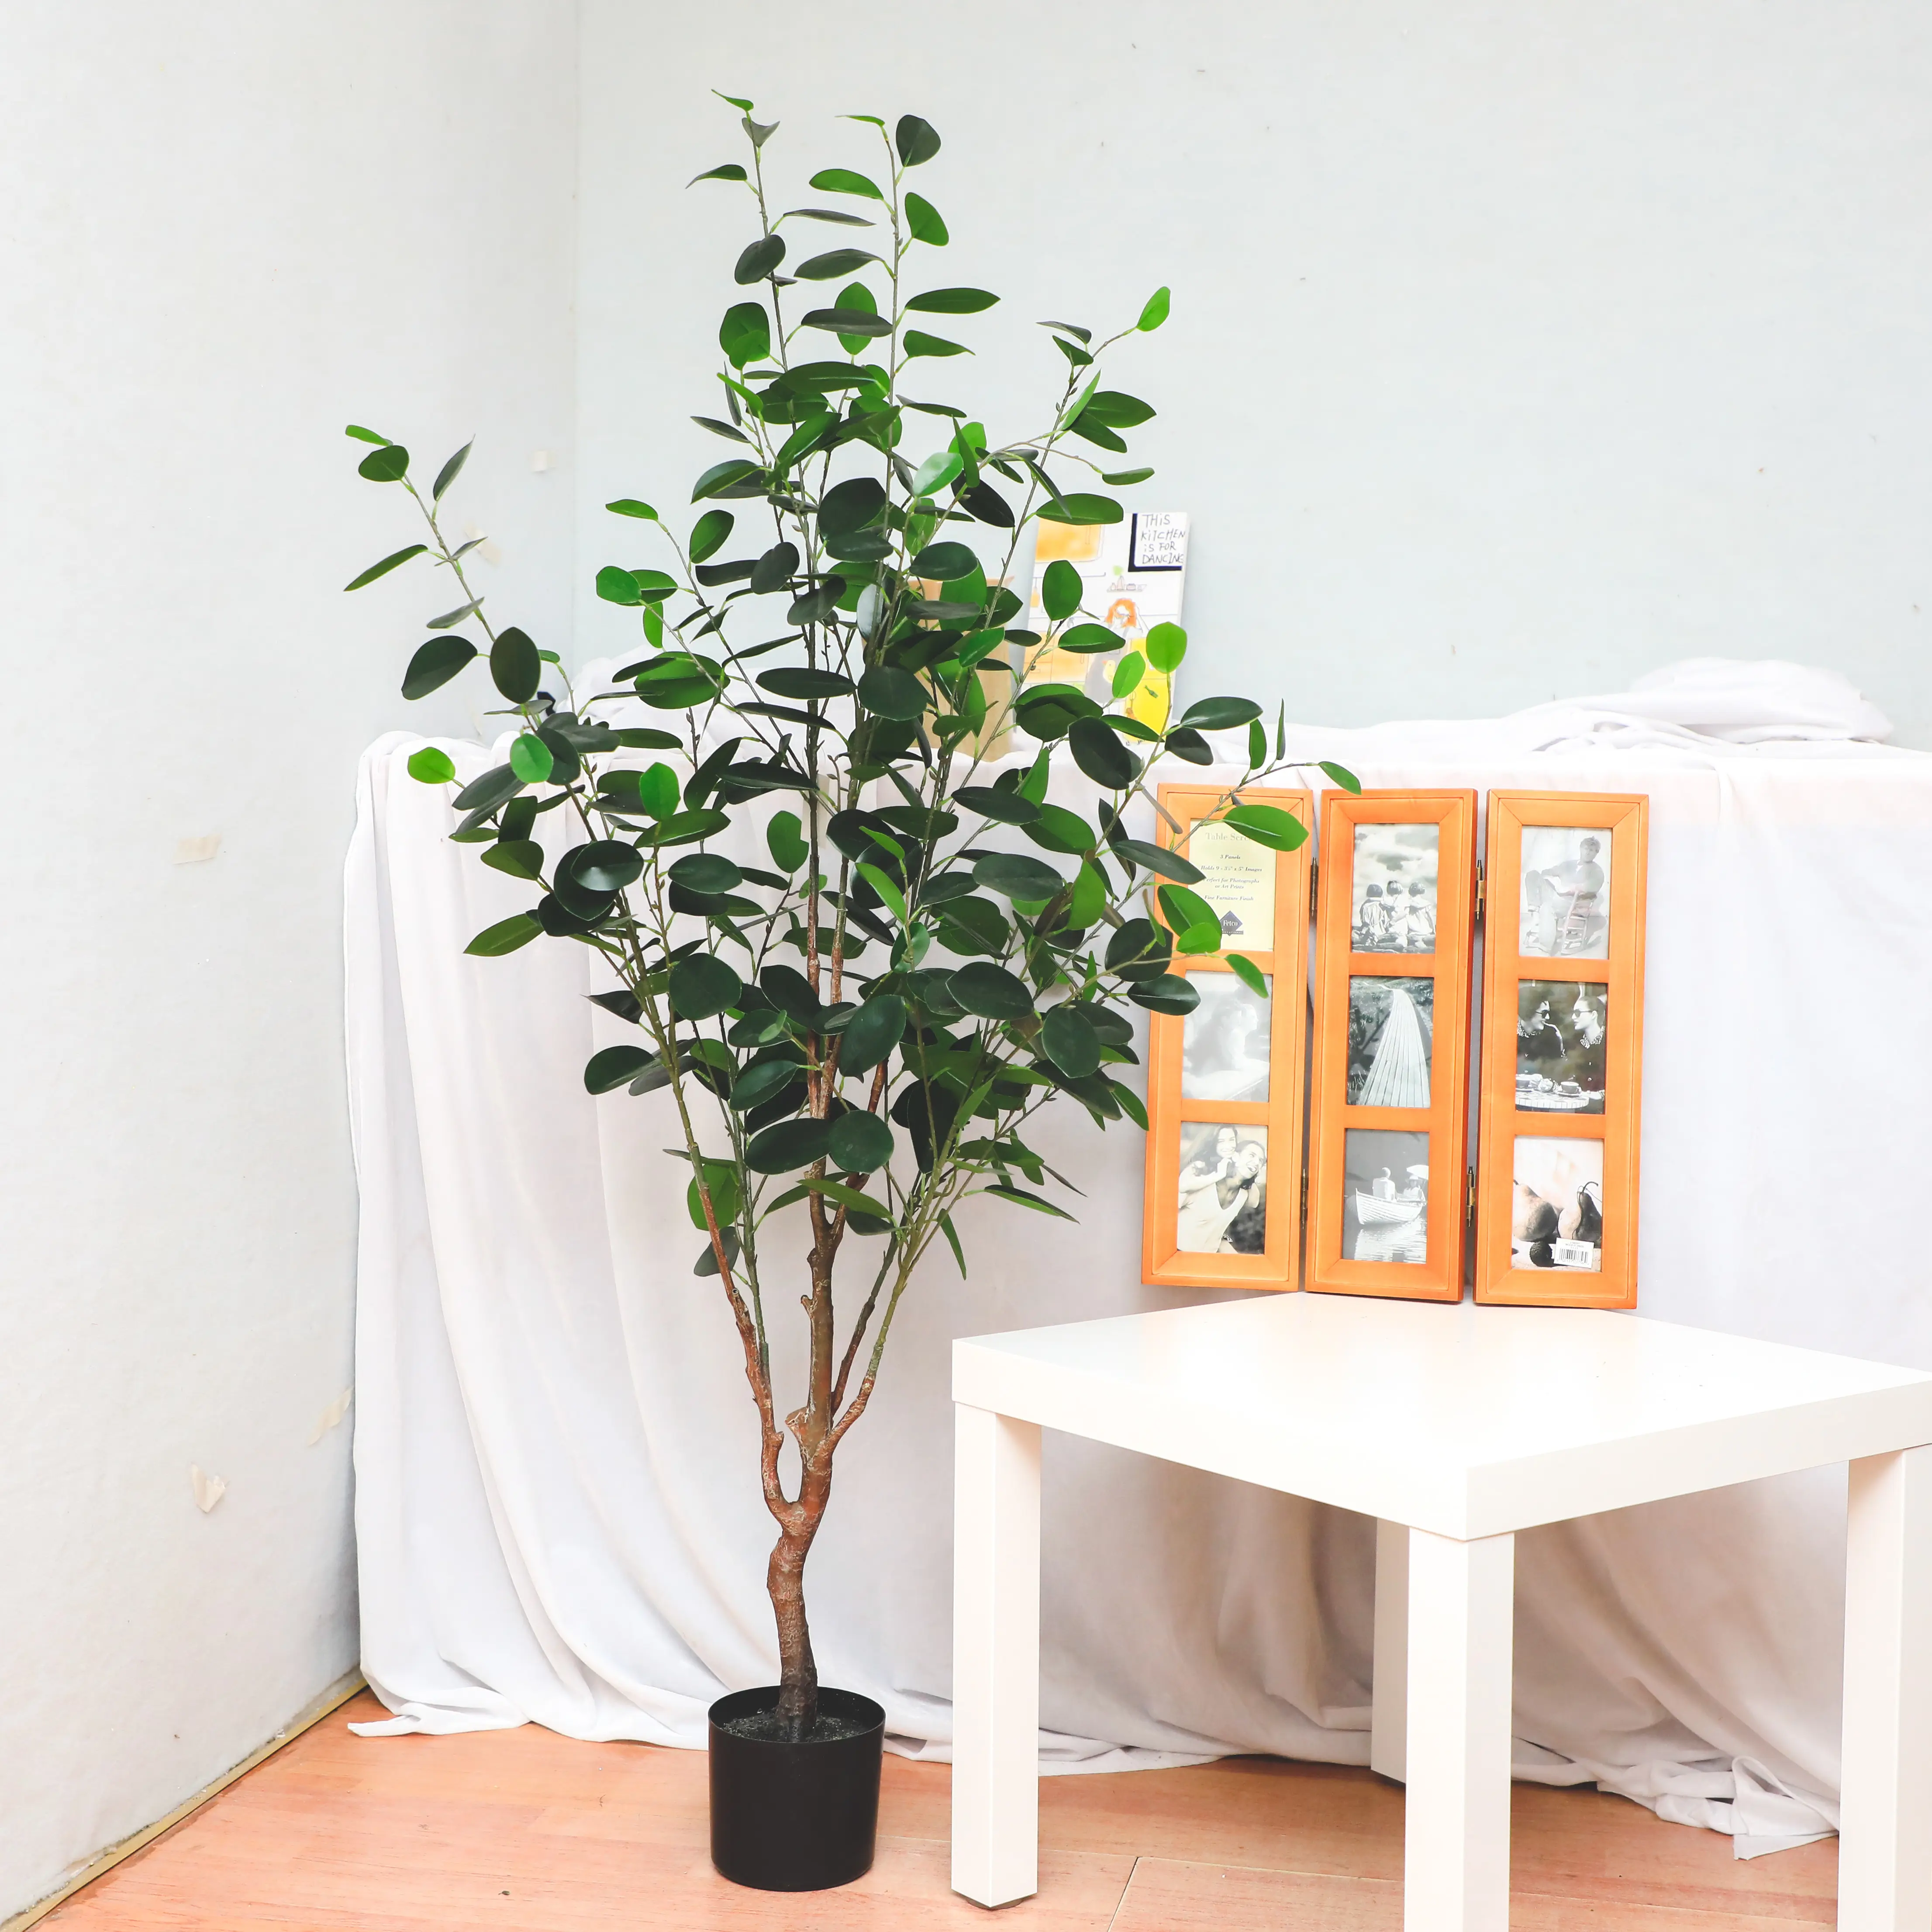 Tanaman Bonsai Gaya Baru Cina, Tanaman Bonsai Hias Dekoratif Sedang Mini Kecil, Tanaman Ficus Microcarpa